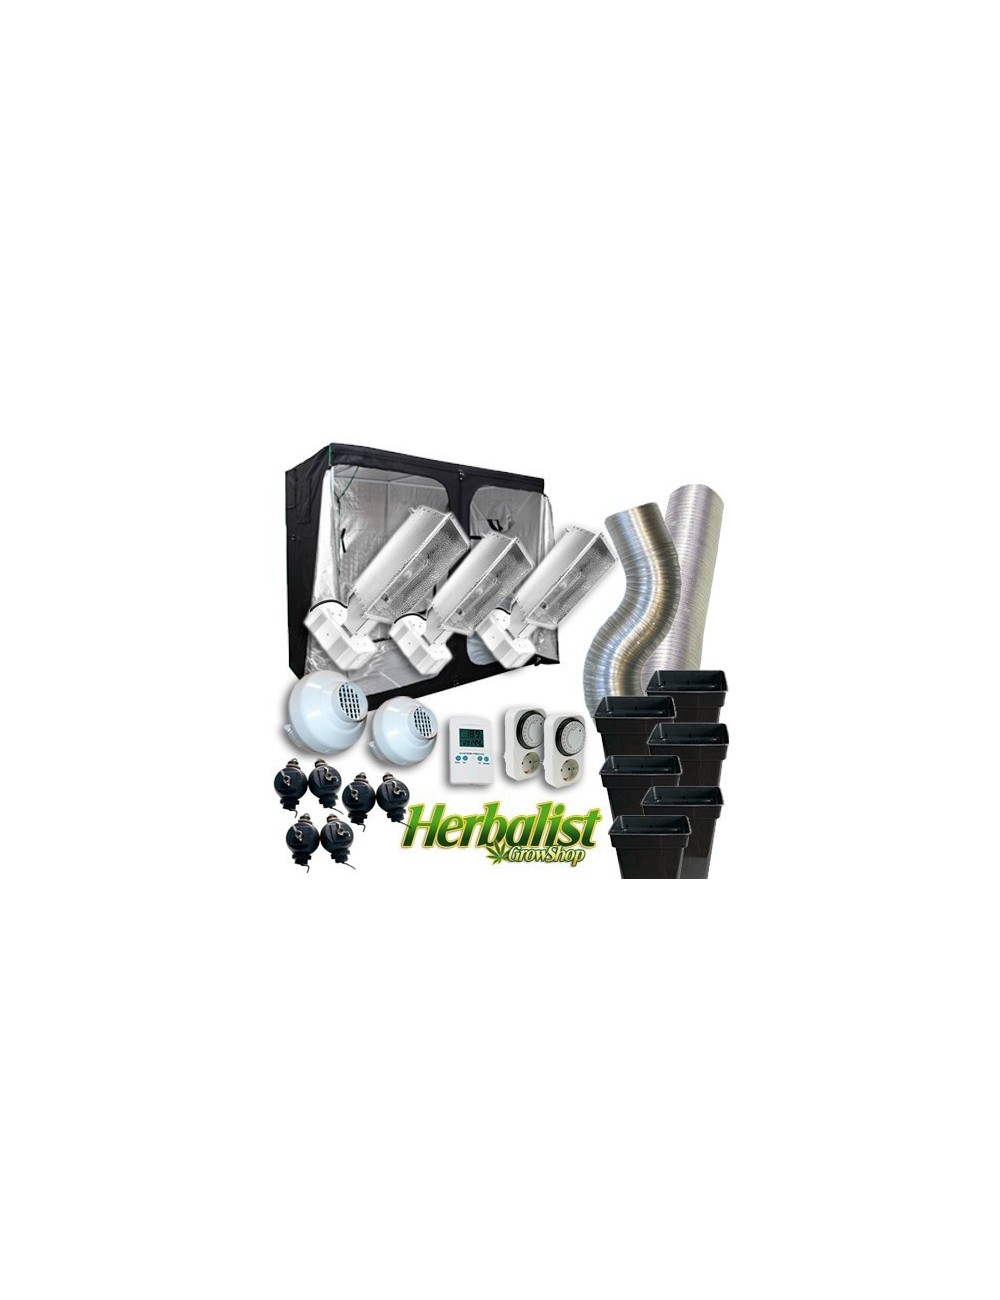 Kit Cultivo Herbalist 290 LEC Agrolite